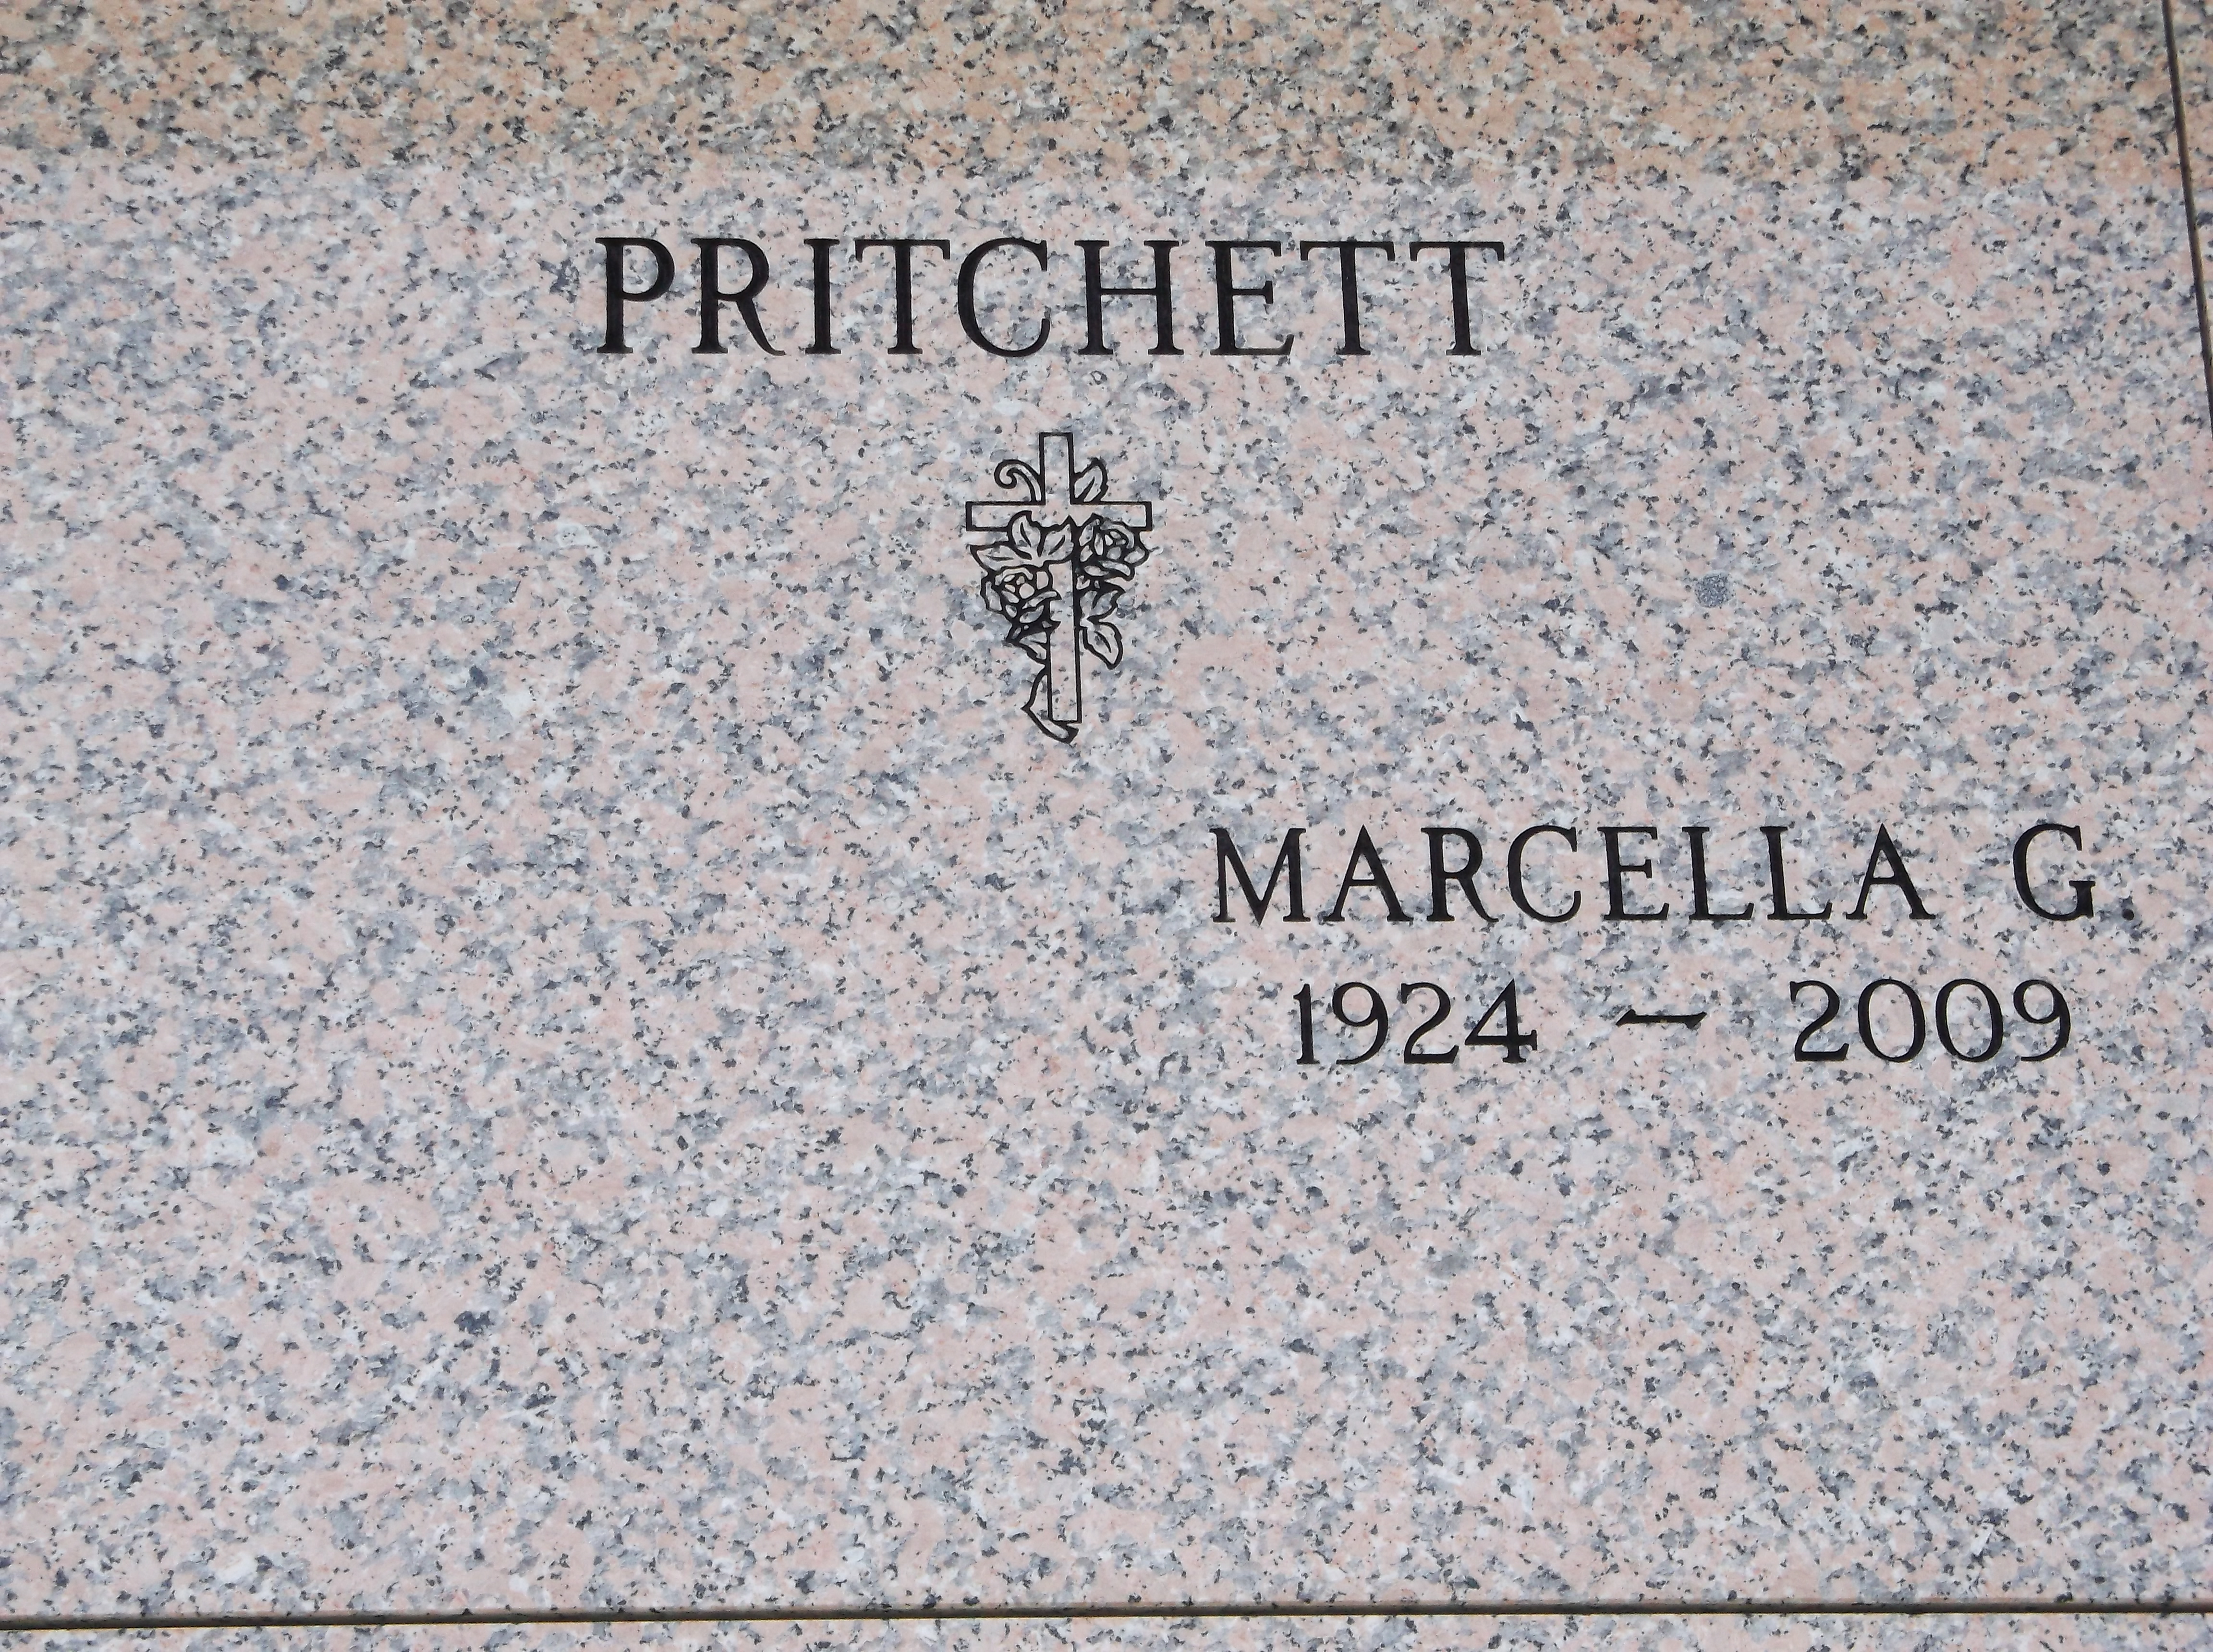 Marcella G Pritchett